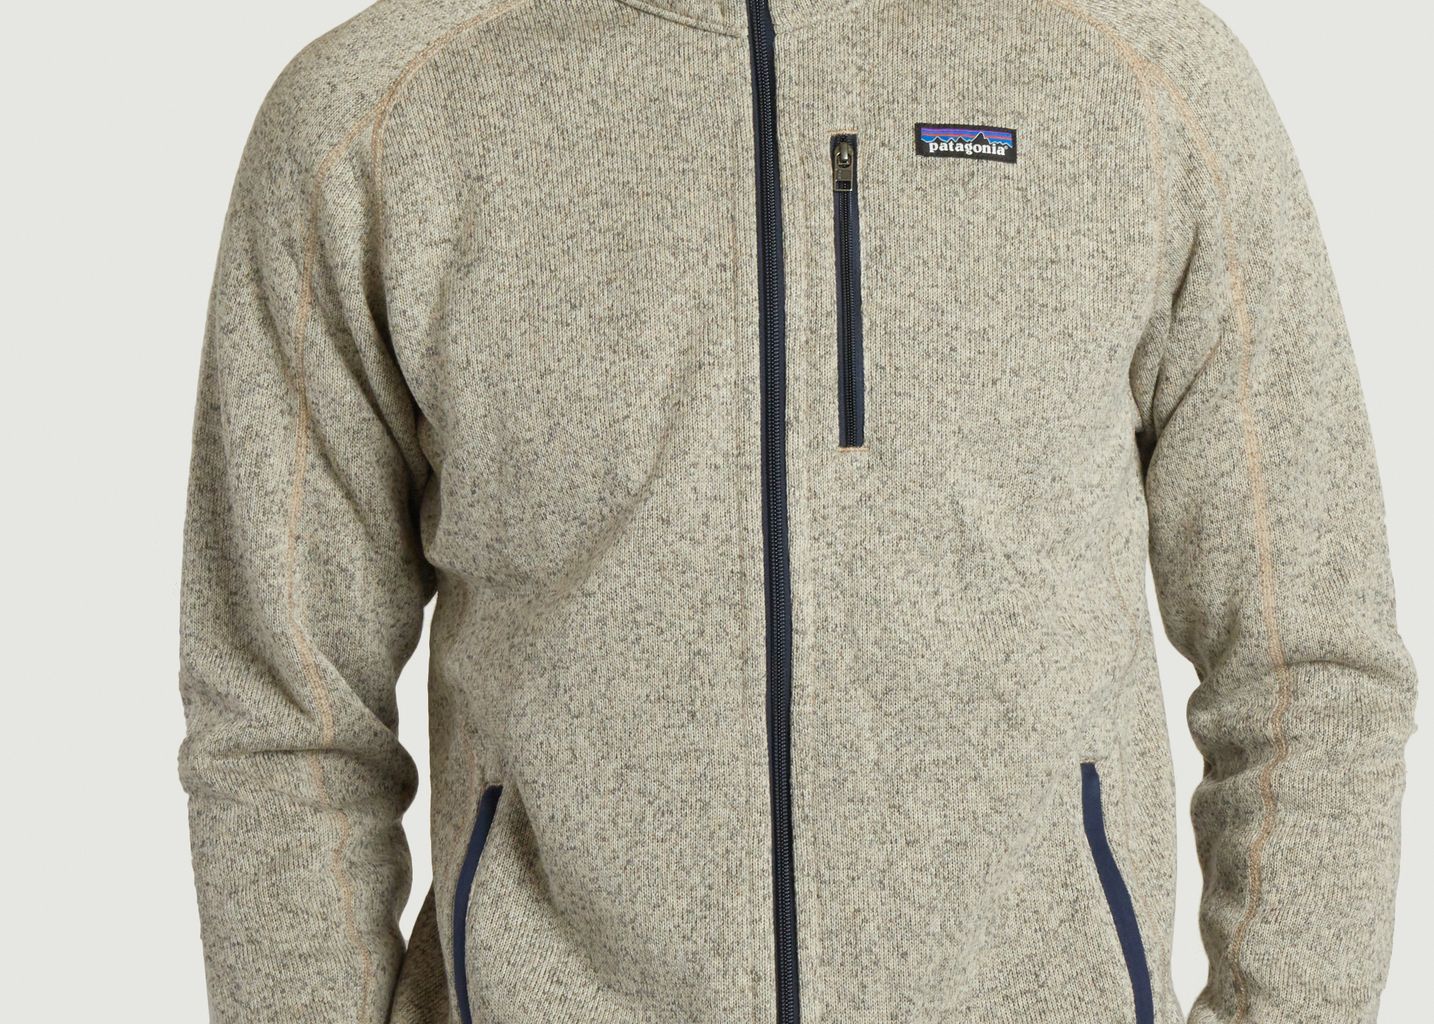 Fleece jacket - Patagonia